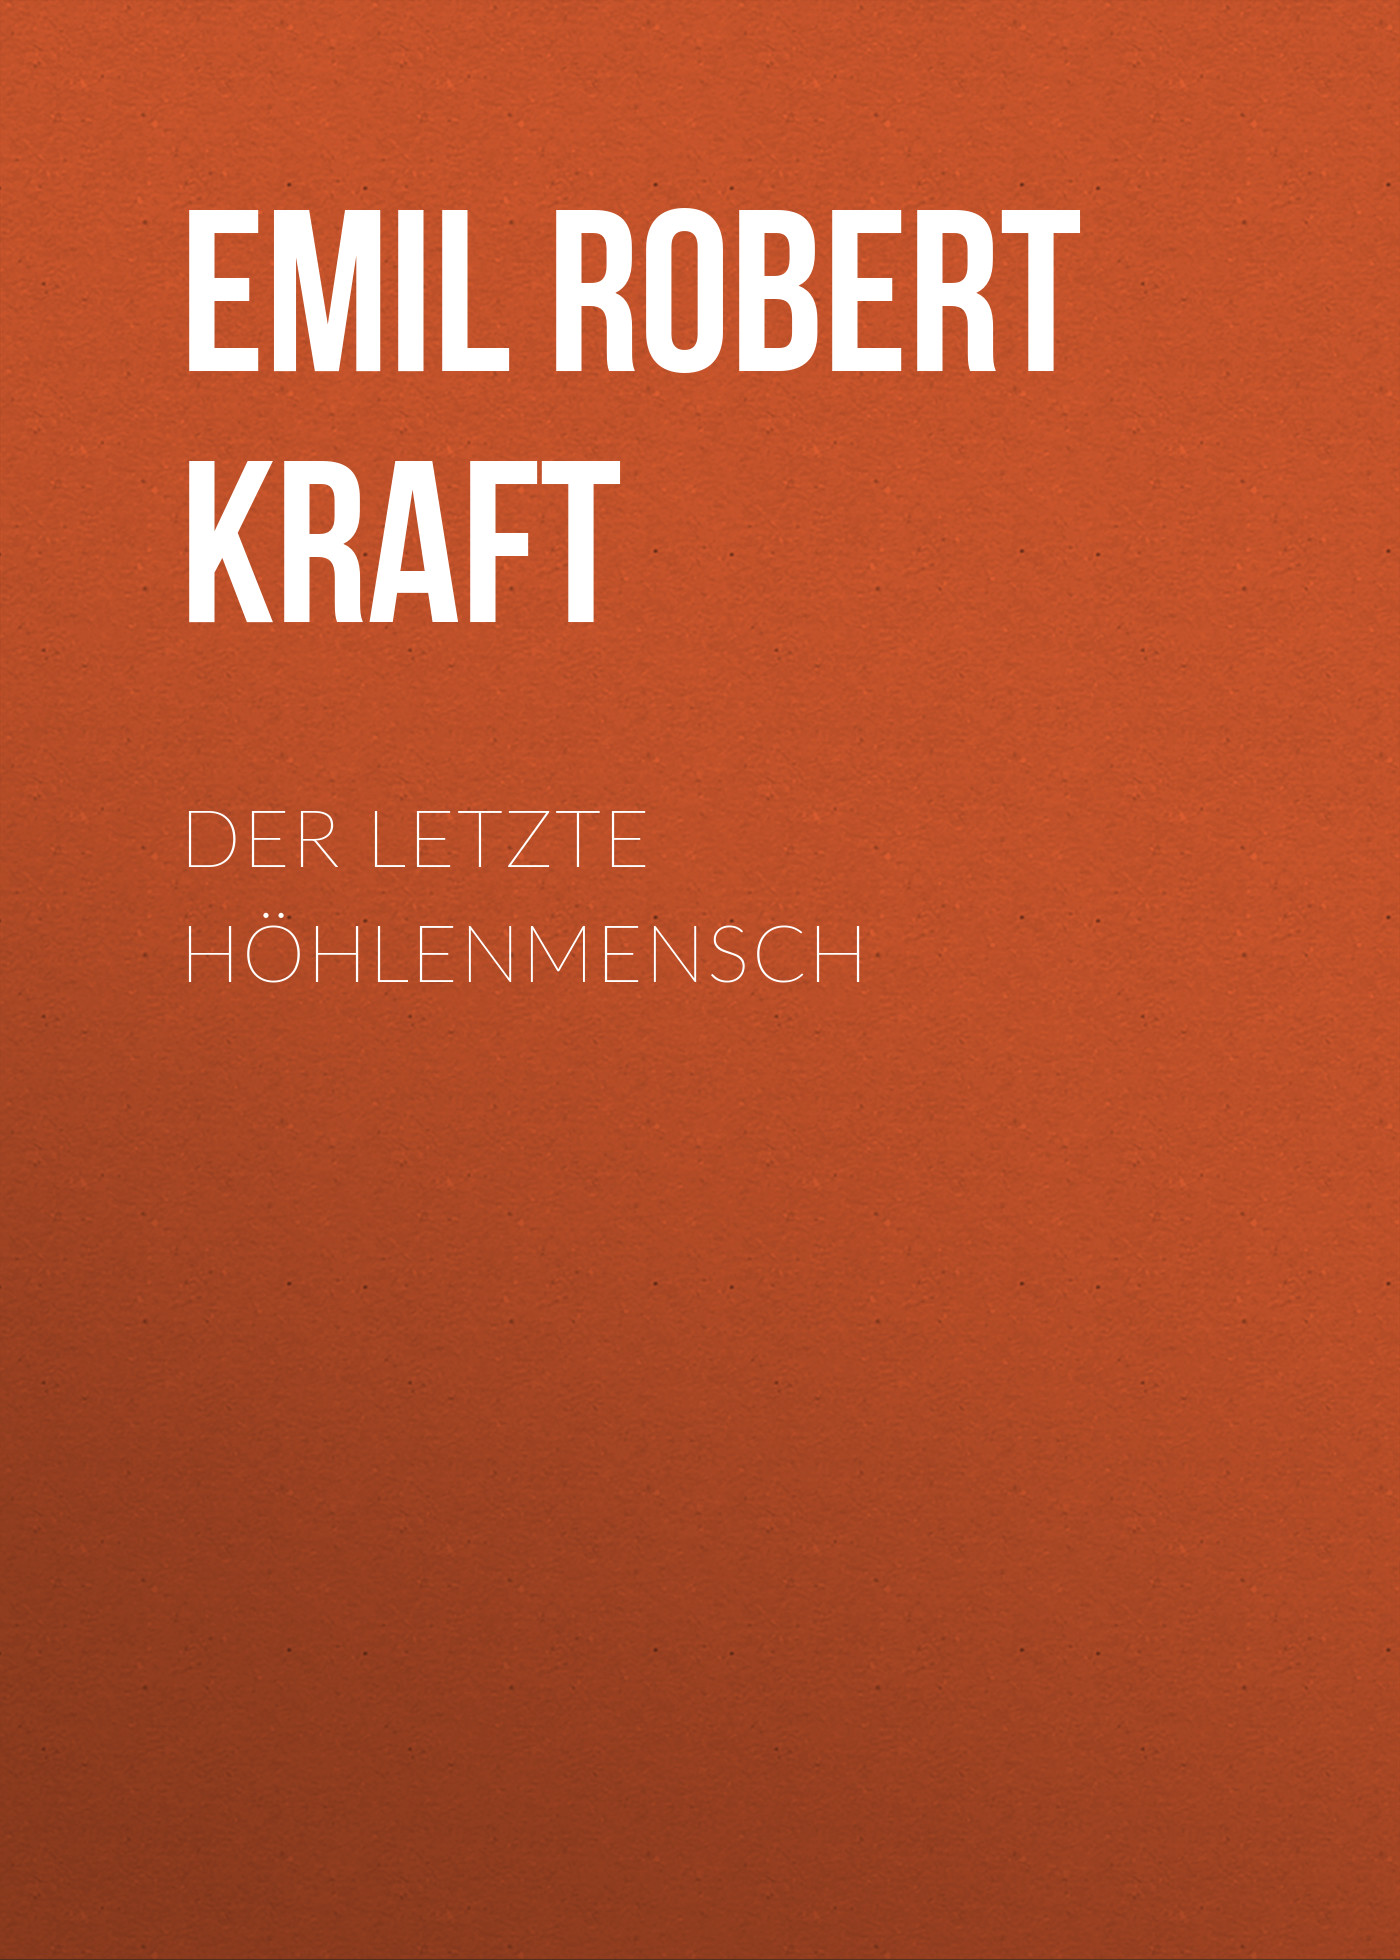 Книга Der letzte Höhlenmensch из серии , созданная Emil Robert Kraft, может относится к жанру Зарубежная классика. Стоимость электронной книги Der letzte Höhlenmensch с идентификатором 48633156 составляет 0 руб.